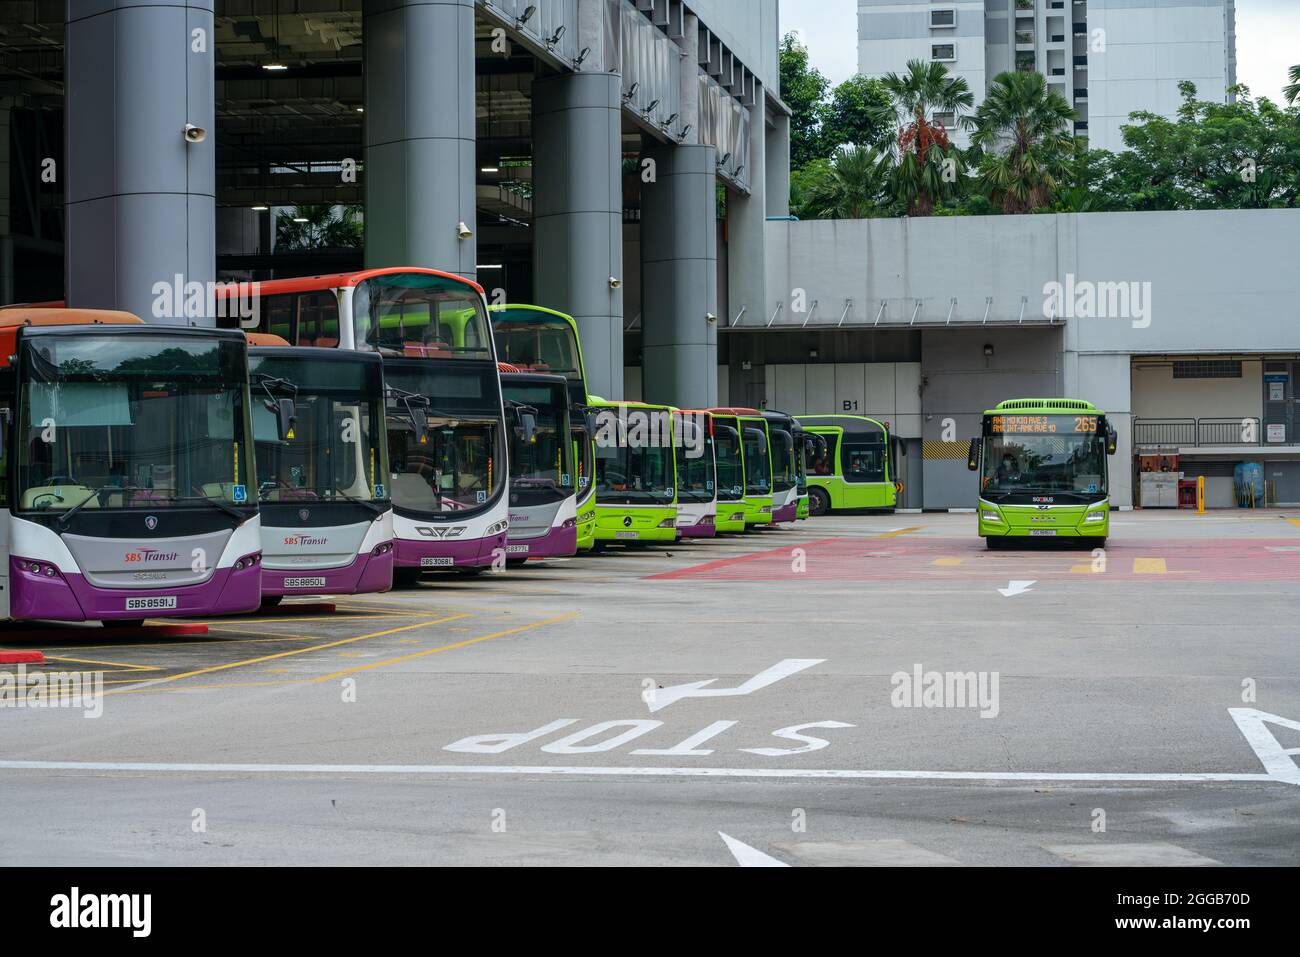 SINGAPOUR, SINGAPOUR - 24 août 2021 : départ de l'échangeur de bus Ang Mo Kio. Bus garés. Tir horizontal Banque D'Images